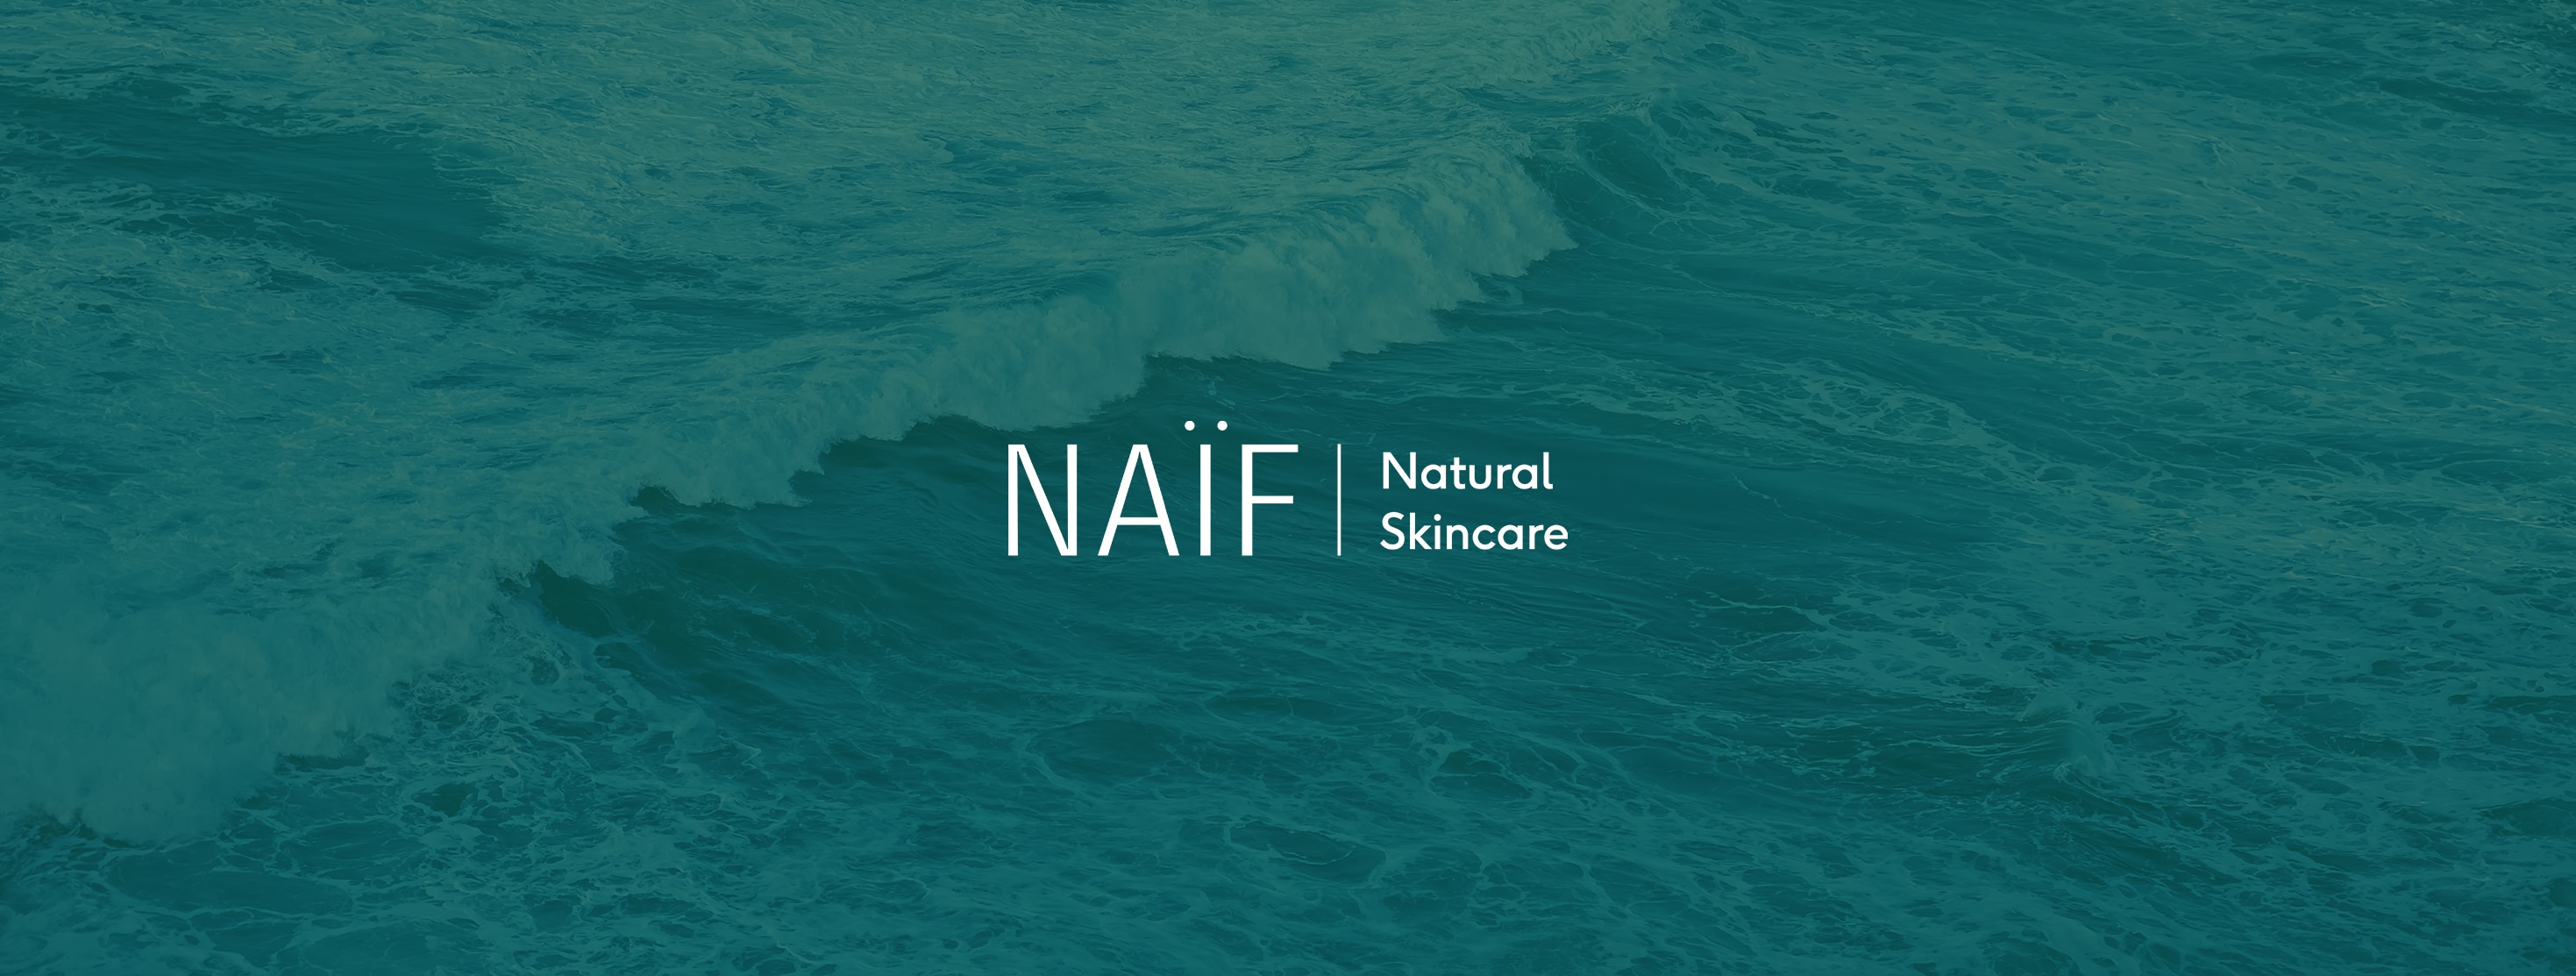 Naif Natural Skincare